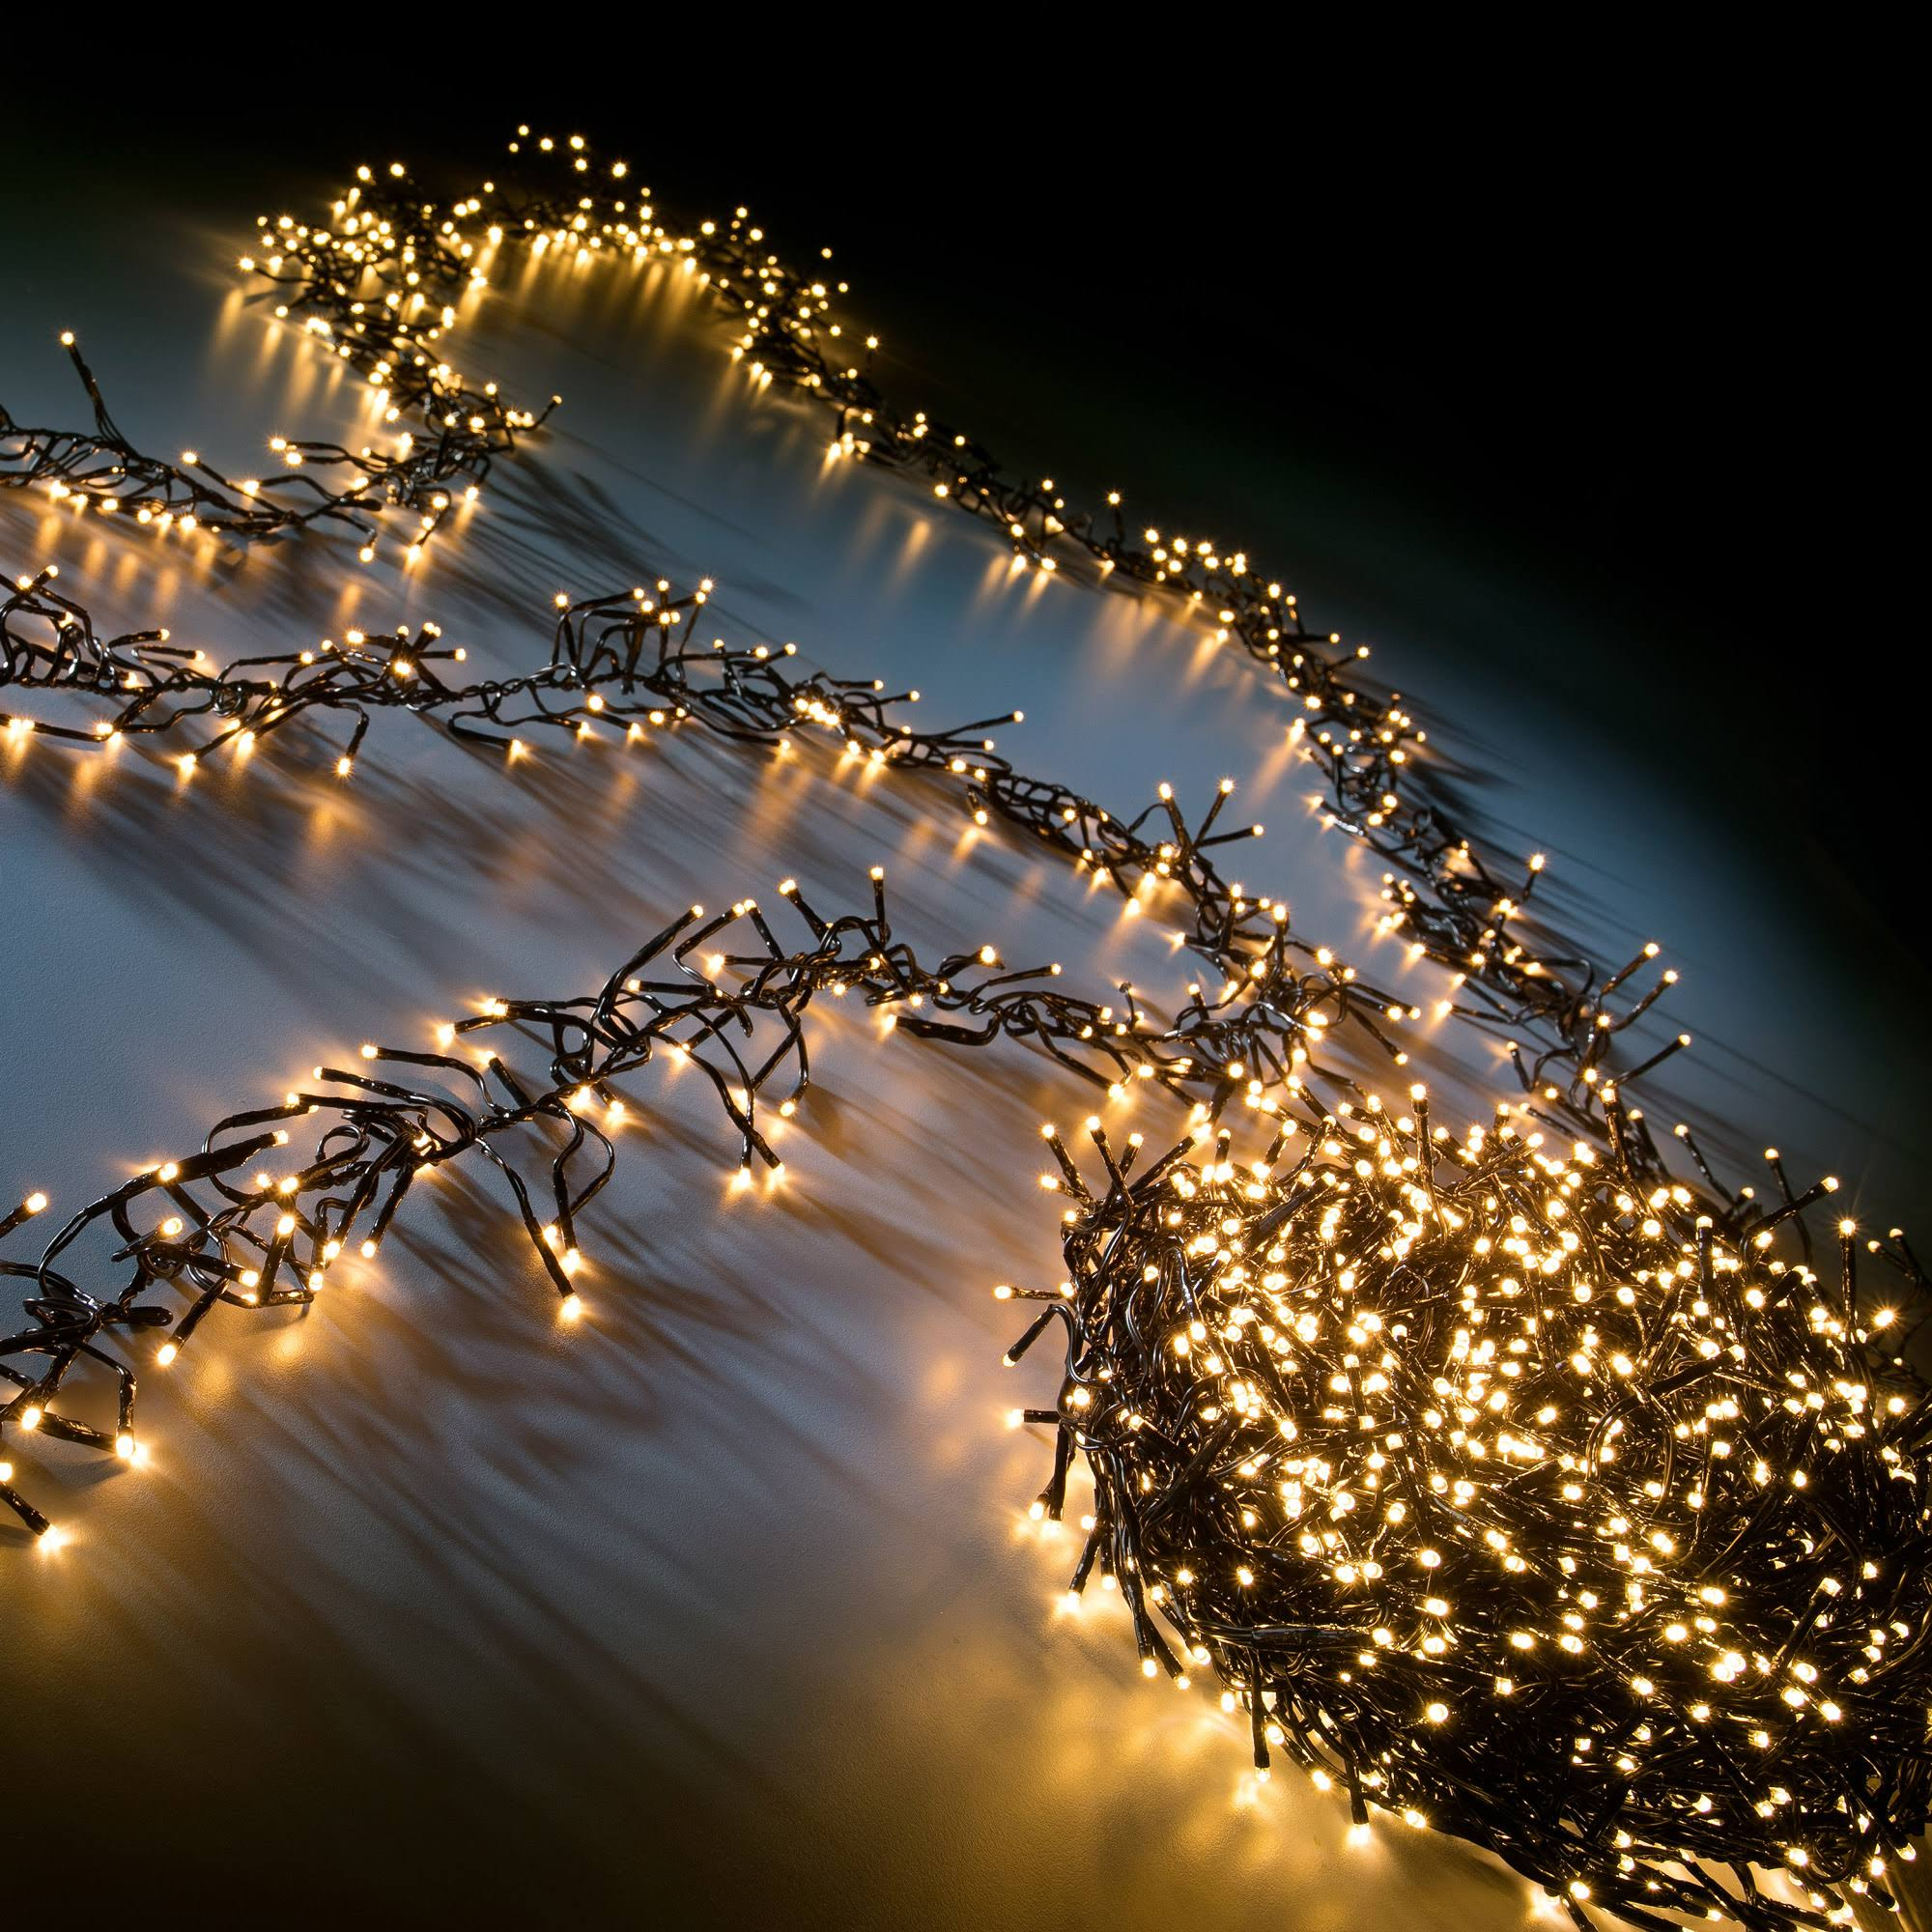 LED SLABO Dekoration 1500er Lichterkette Weihnachtsbeleuchtung Weihnachtsbaum Lichter Deko Weihnachten